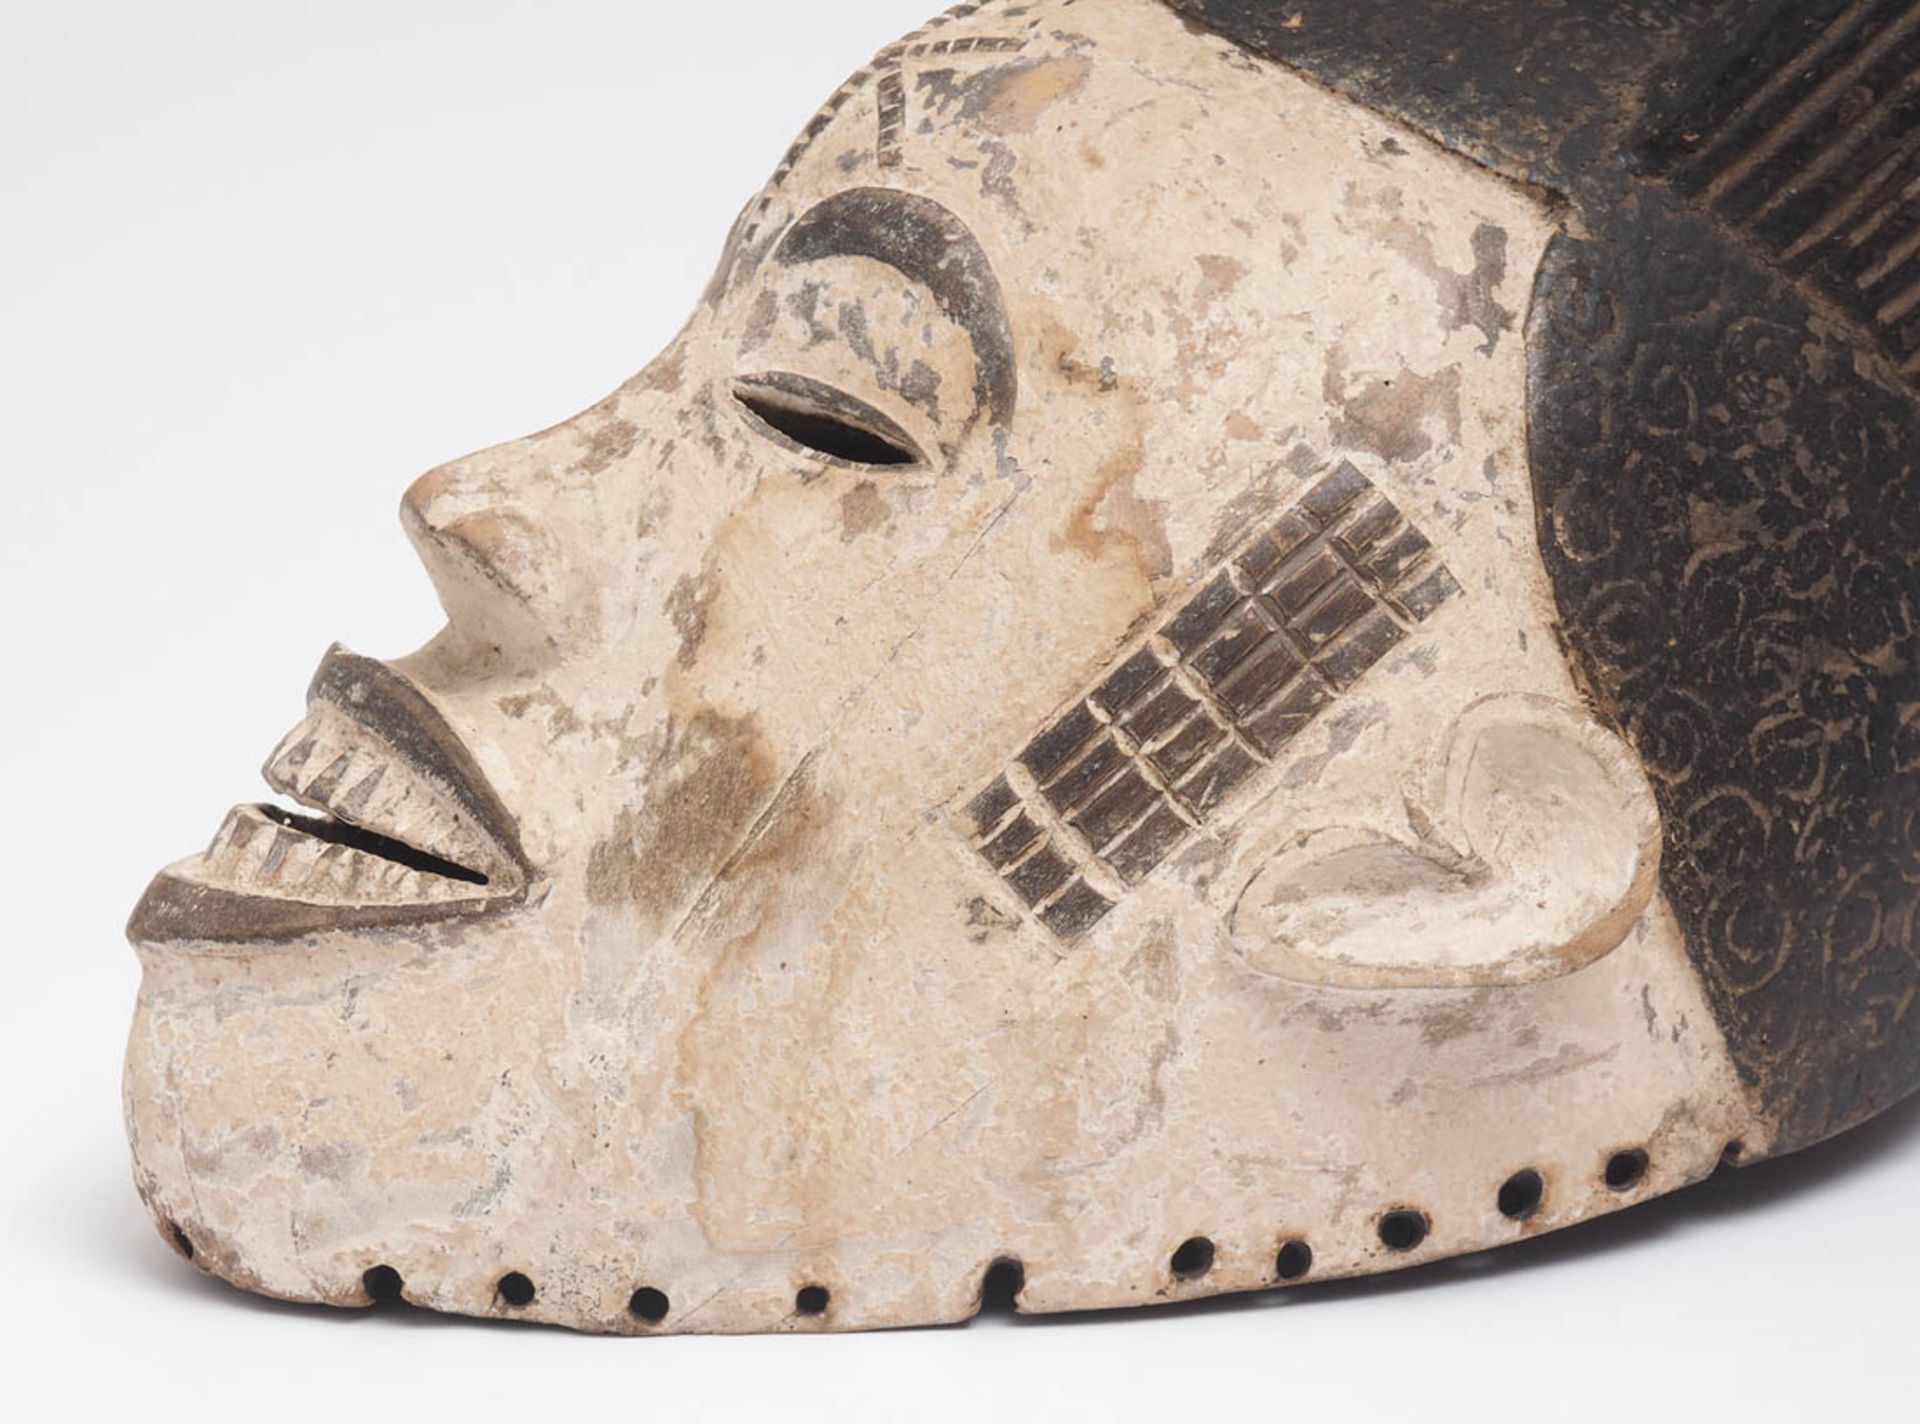 Maske des Mmwo-Geheimbundes, Ibo, Nigeria Holz, geschnitzt, partiell geschwärzt bzw. weiß gekalkt. - Bild 3 aus 5